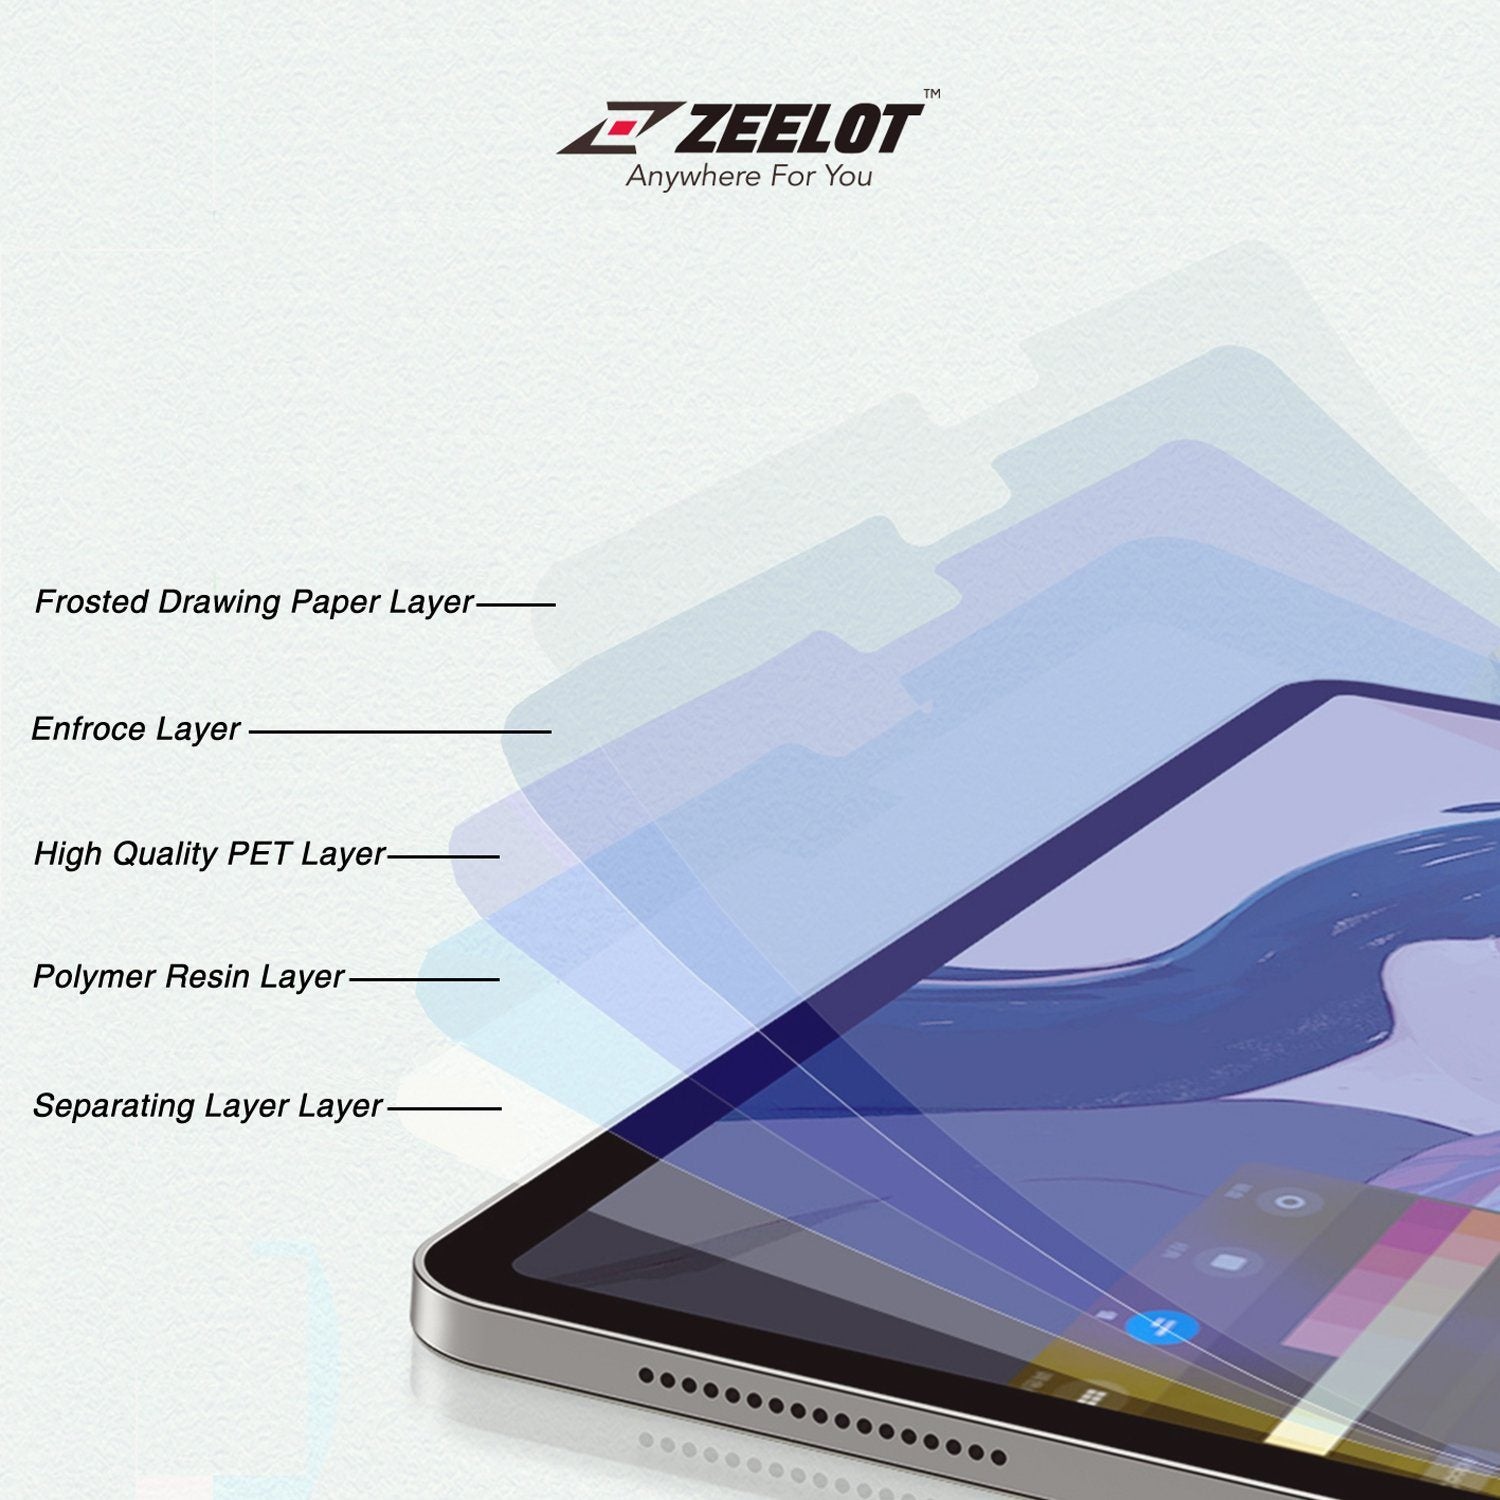 ZEELOT Paper Like Screen Protector for iPad 10.5"(2019/2017) Default Zeelot 